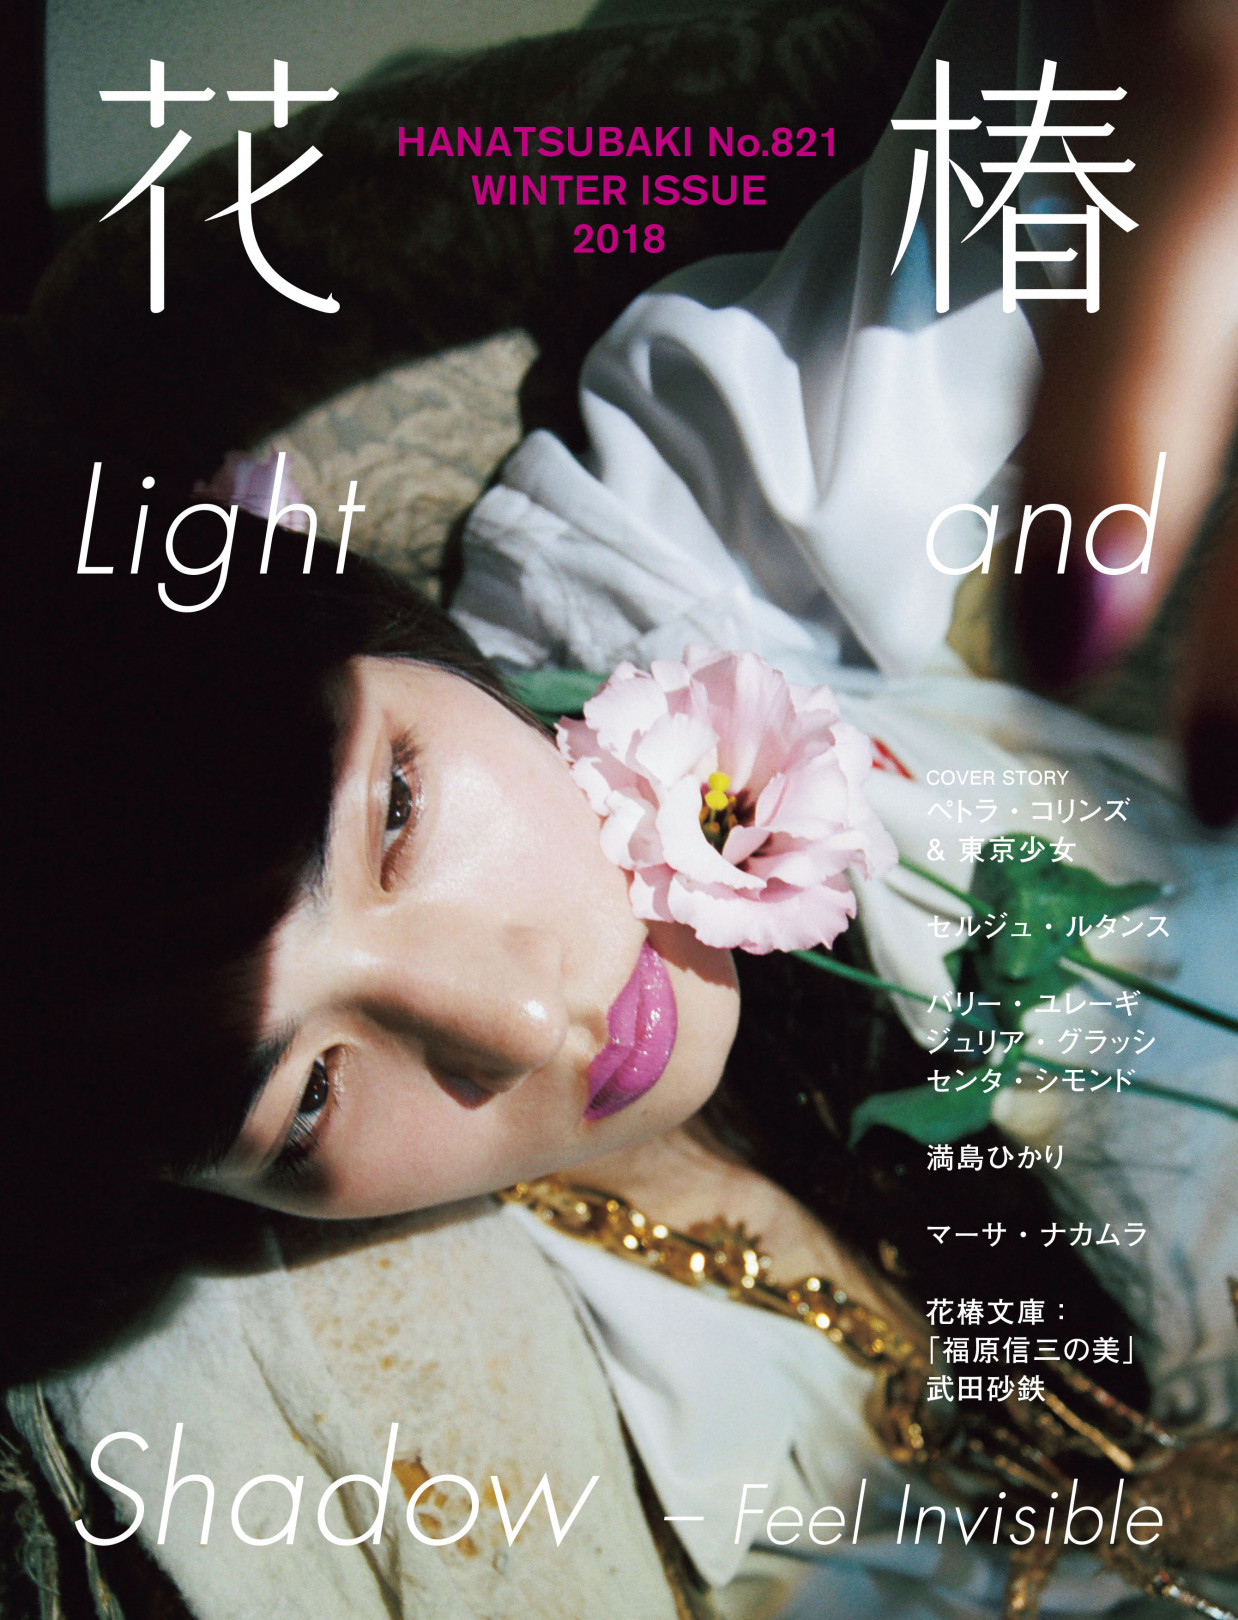 資生堂 花椿 冬号が刊行 光と陰 をテーマにペトラ コリンズが日本の少女の陰影を撮り下ろす Art Culture Fashion Headline